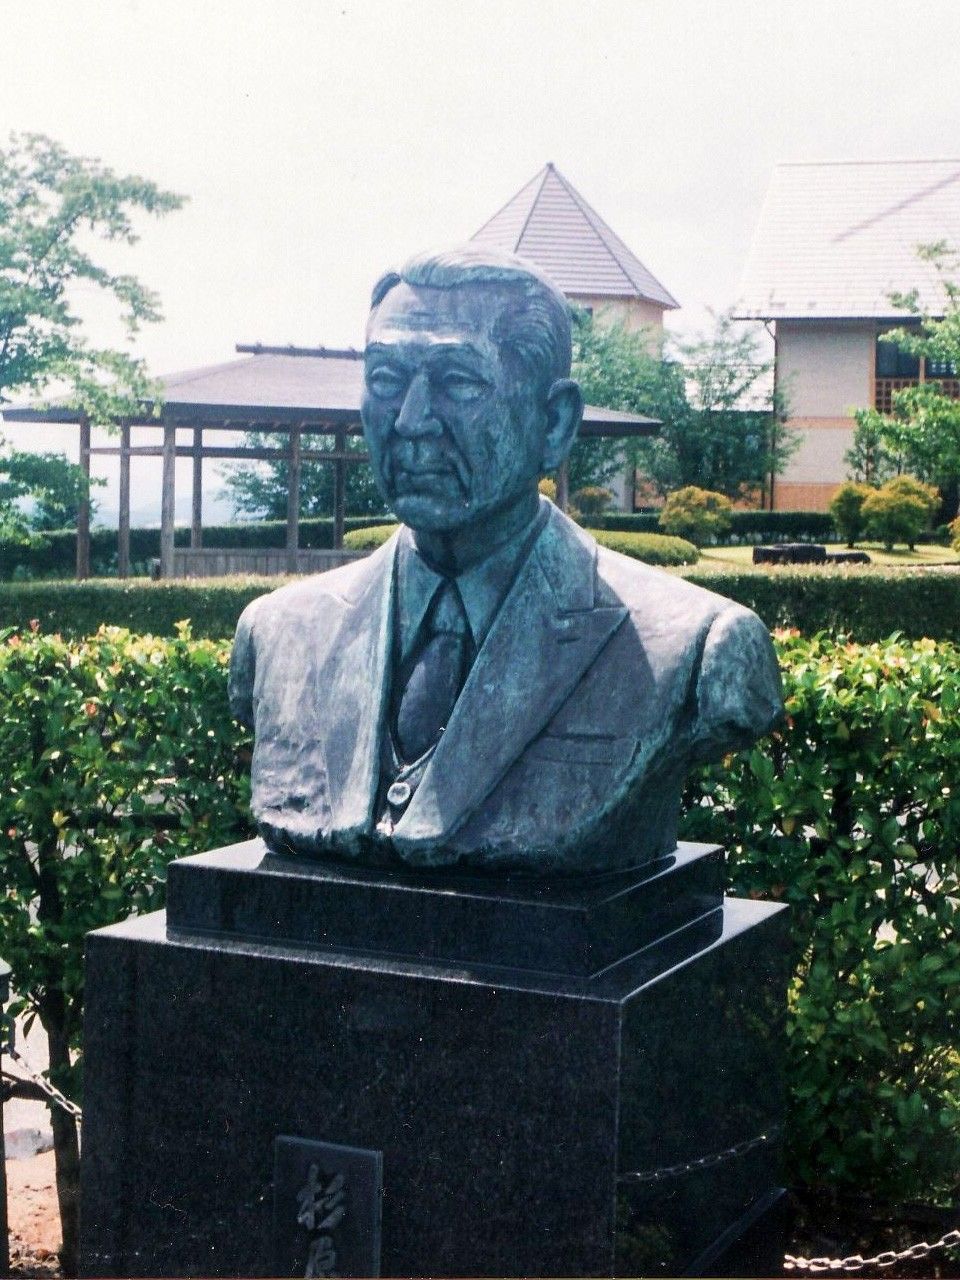 Estatua de bronce de Sugihara Chiune en el parque Jindō no oka (“Colina del Humanitarismo”) en el municipio de Yaotsu, prefectura de Gifu. (Fotografía cortesía de Shiraishi Masaaki)